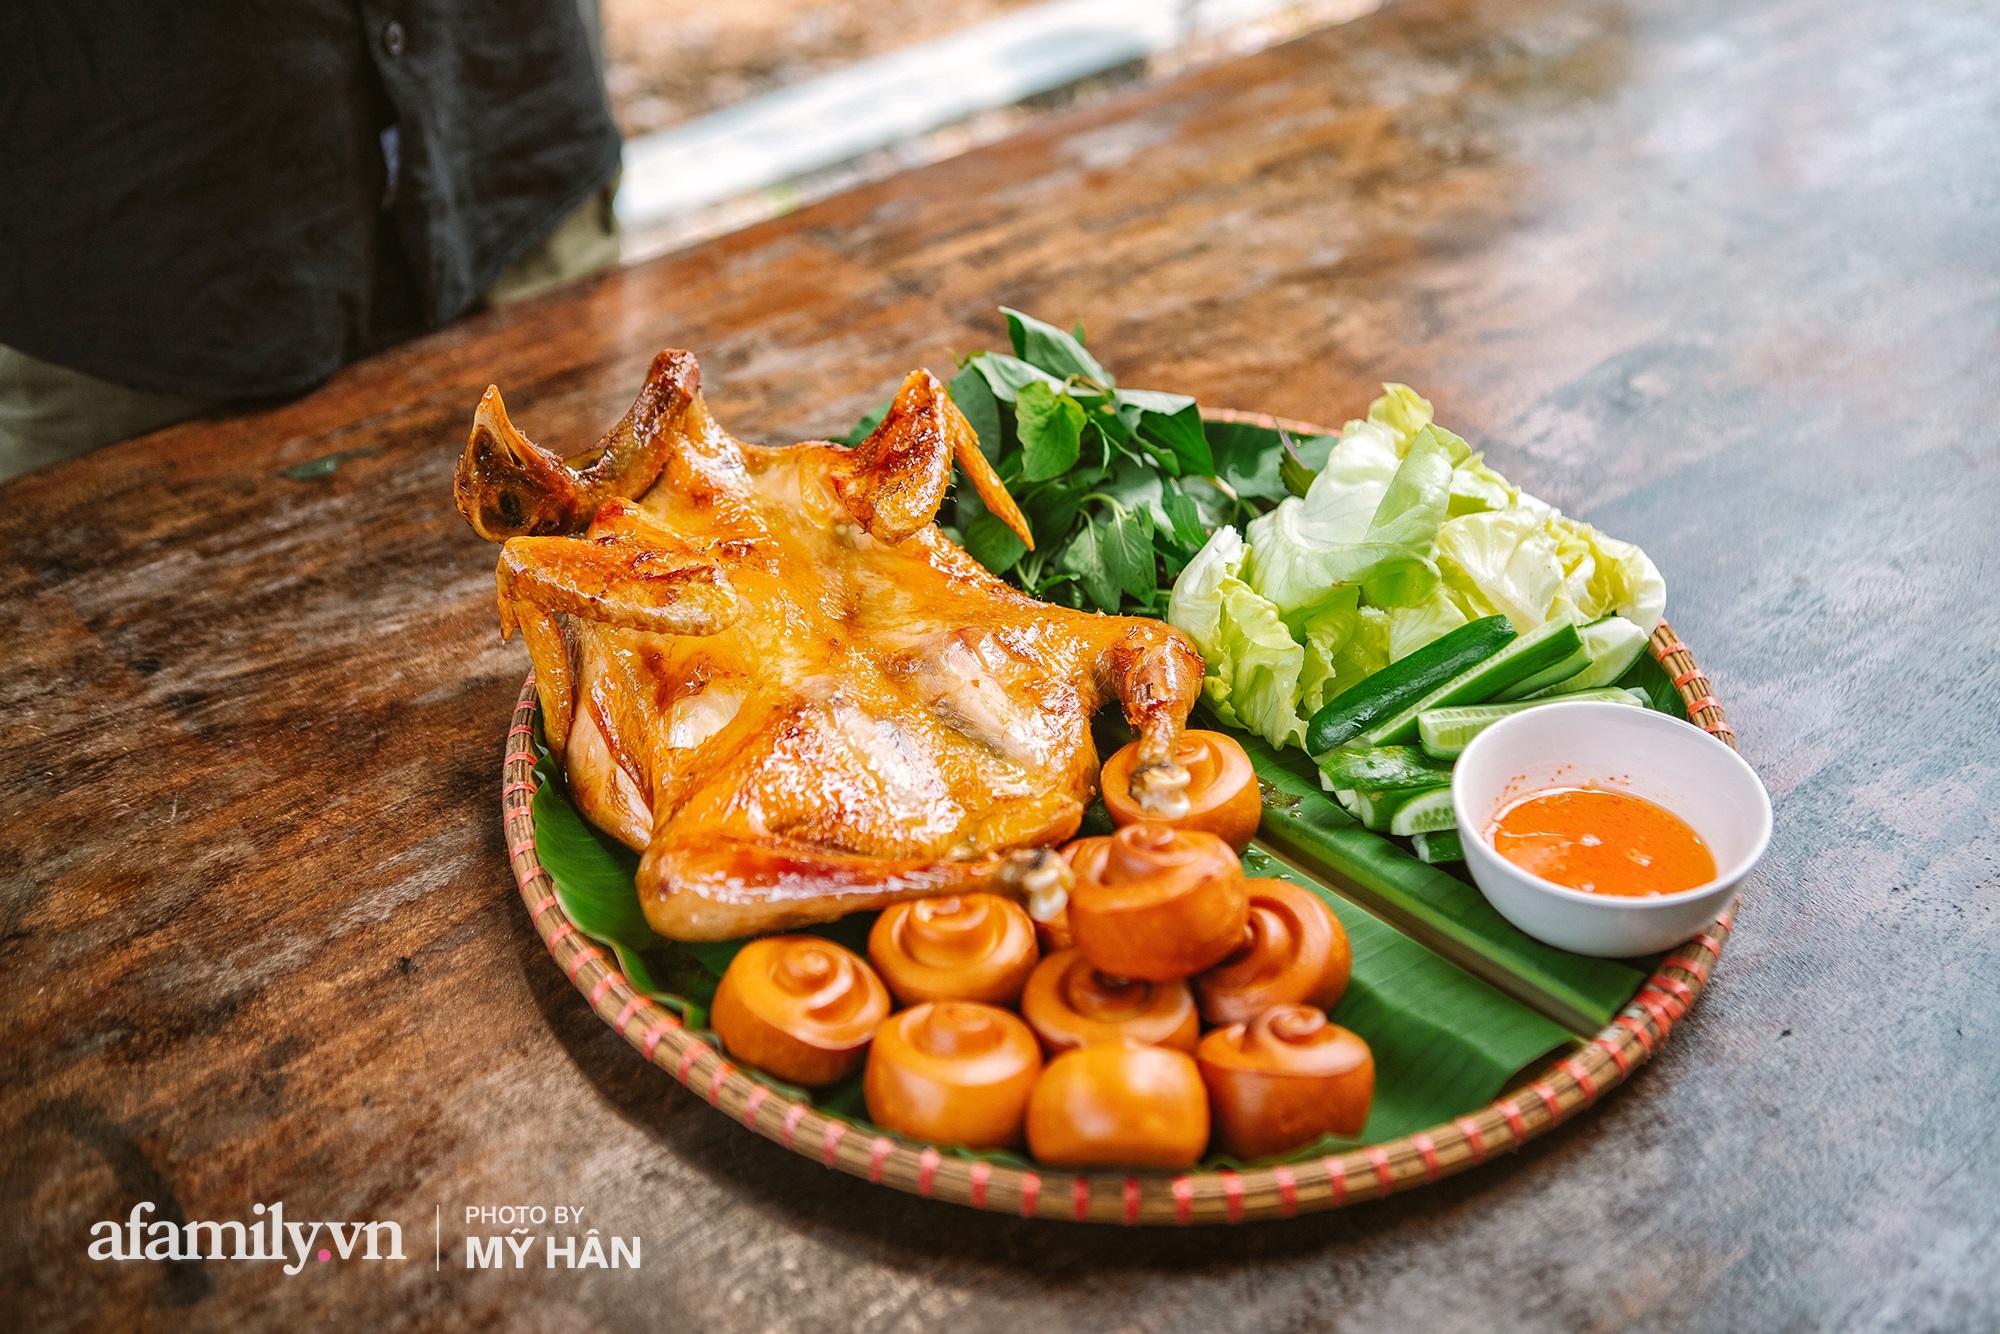 Chui tuốt vô vườn để ăn món GÀ QUAY bằng CHIẾC LU HƠN 100 NĂM tại Cần Thơ, đặc sản nổi tiếng của miền Tây nhưng hot lên tới tận Sài Gòn!